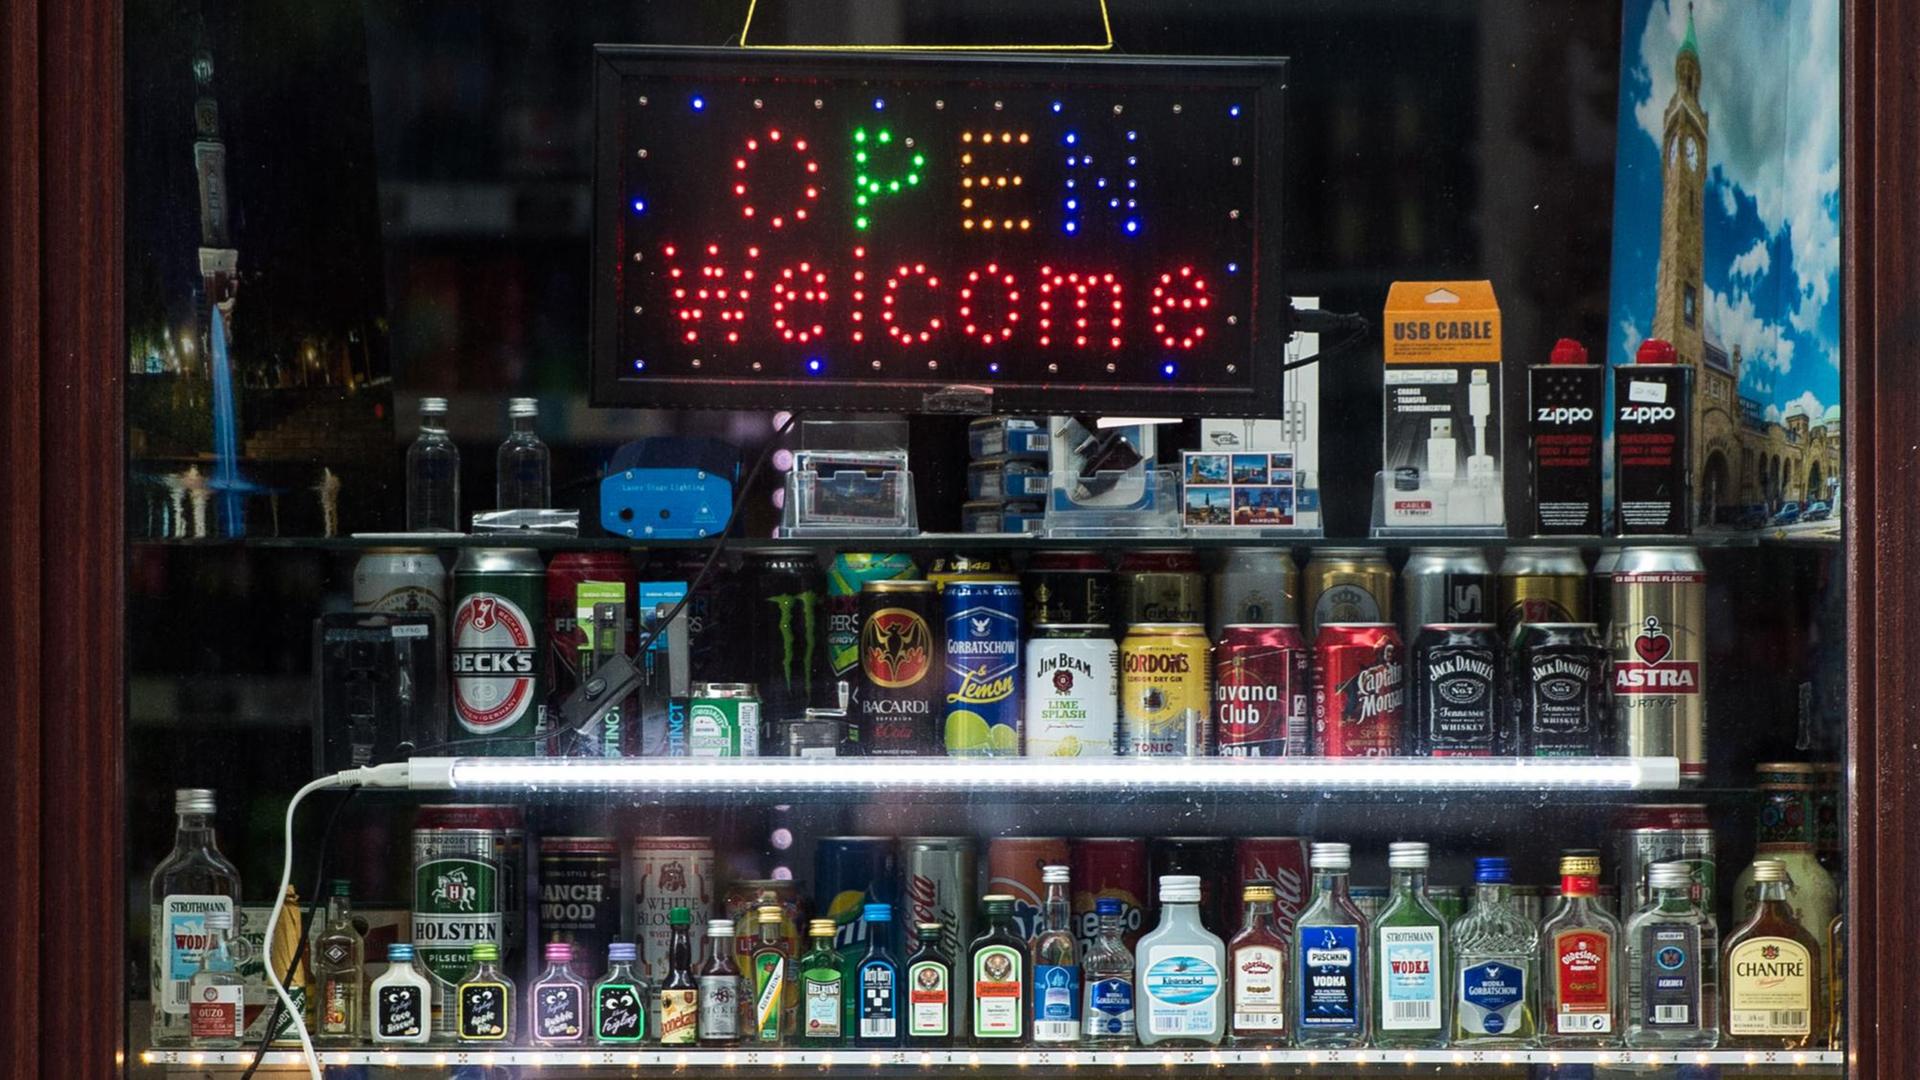 Eine Leuchttafel mit dem Schriftzug "Open Welcome" und zahlreiche alkoholische Getränke stehen am 23.05.2016 in Hamburg in dem Fenster von einem Kiosk.